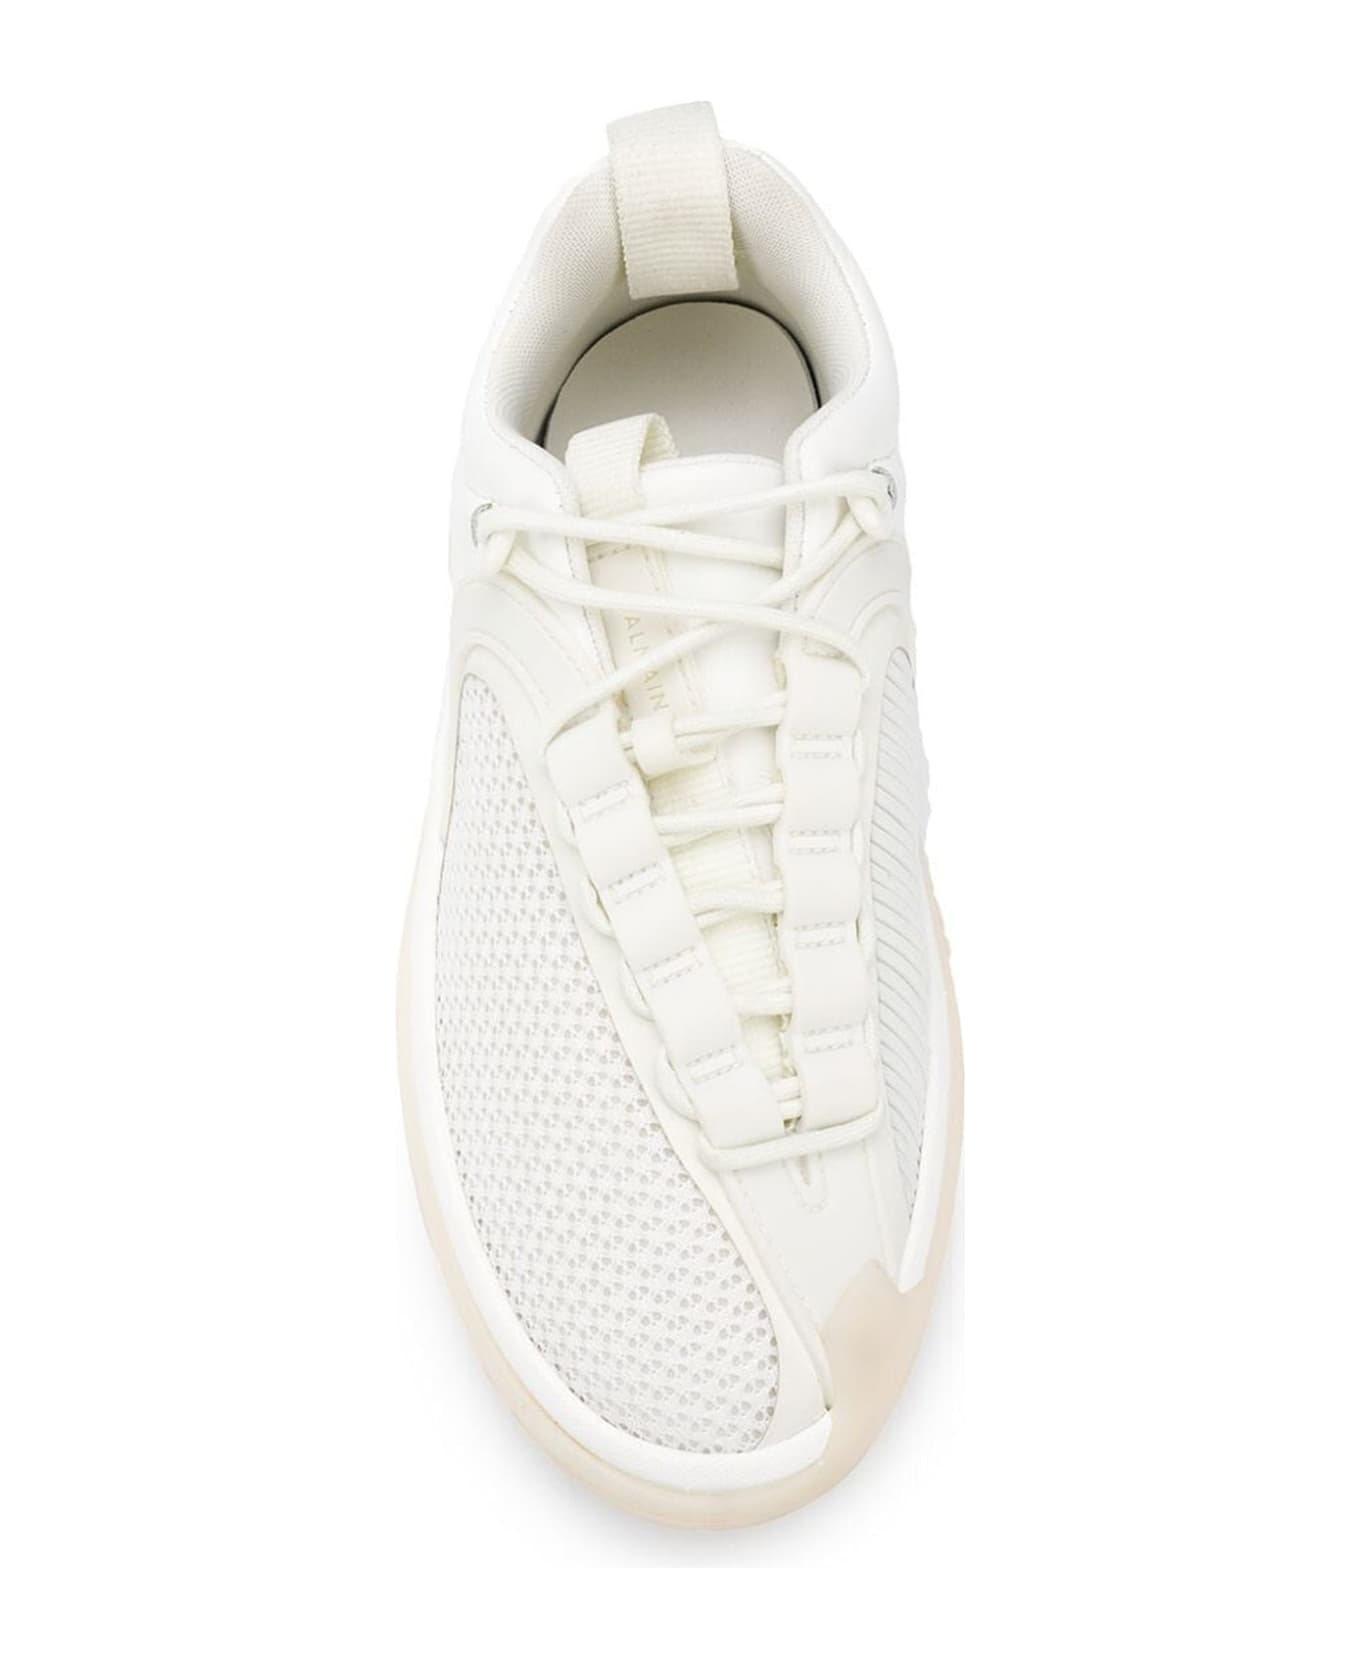 Balmain B-runner Sneakers - White スニーカー